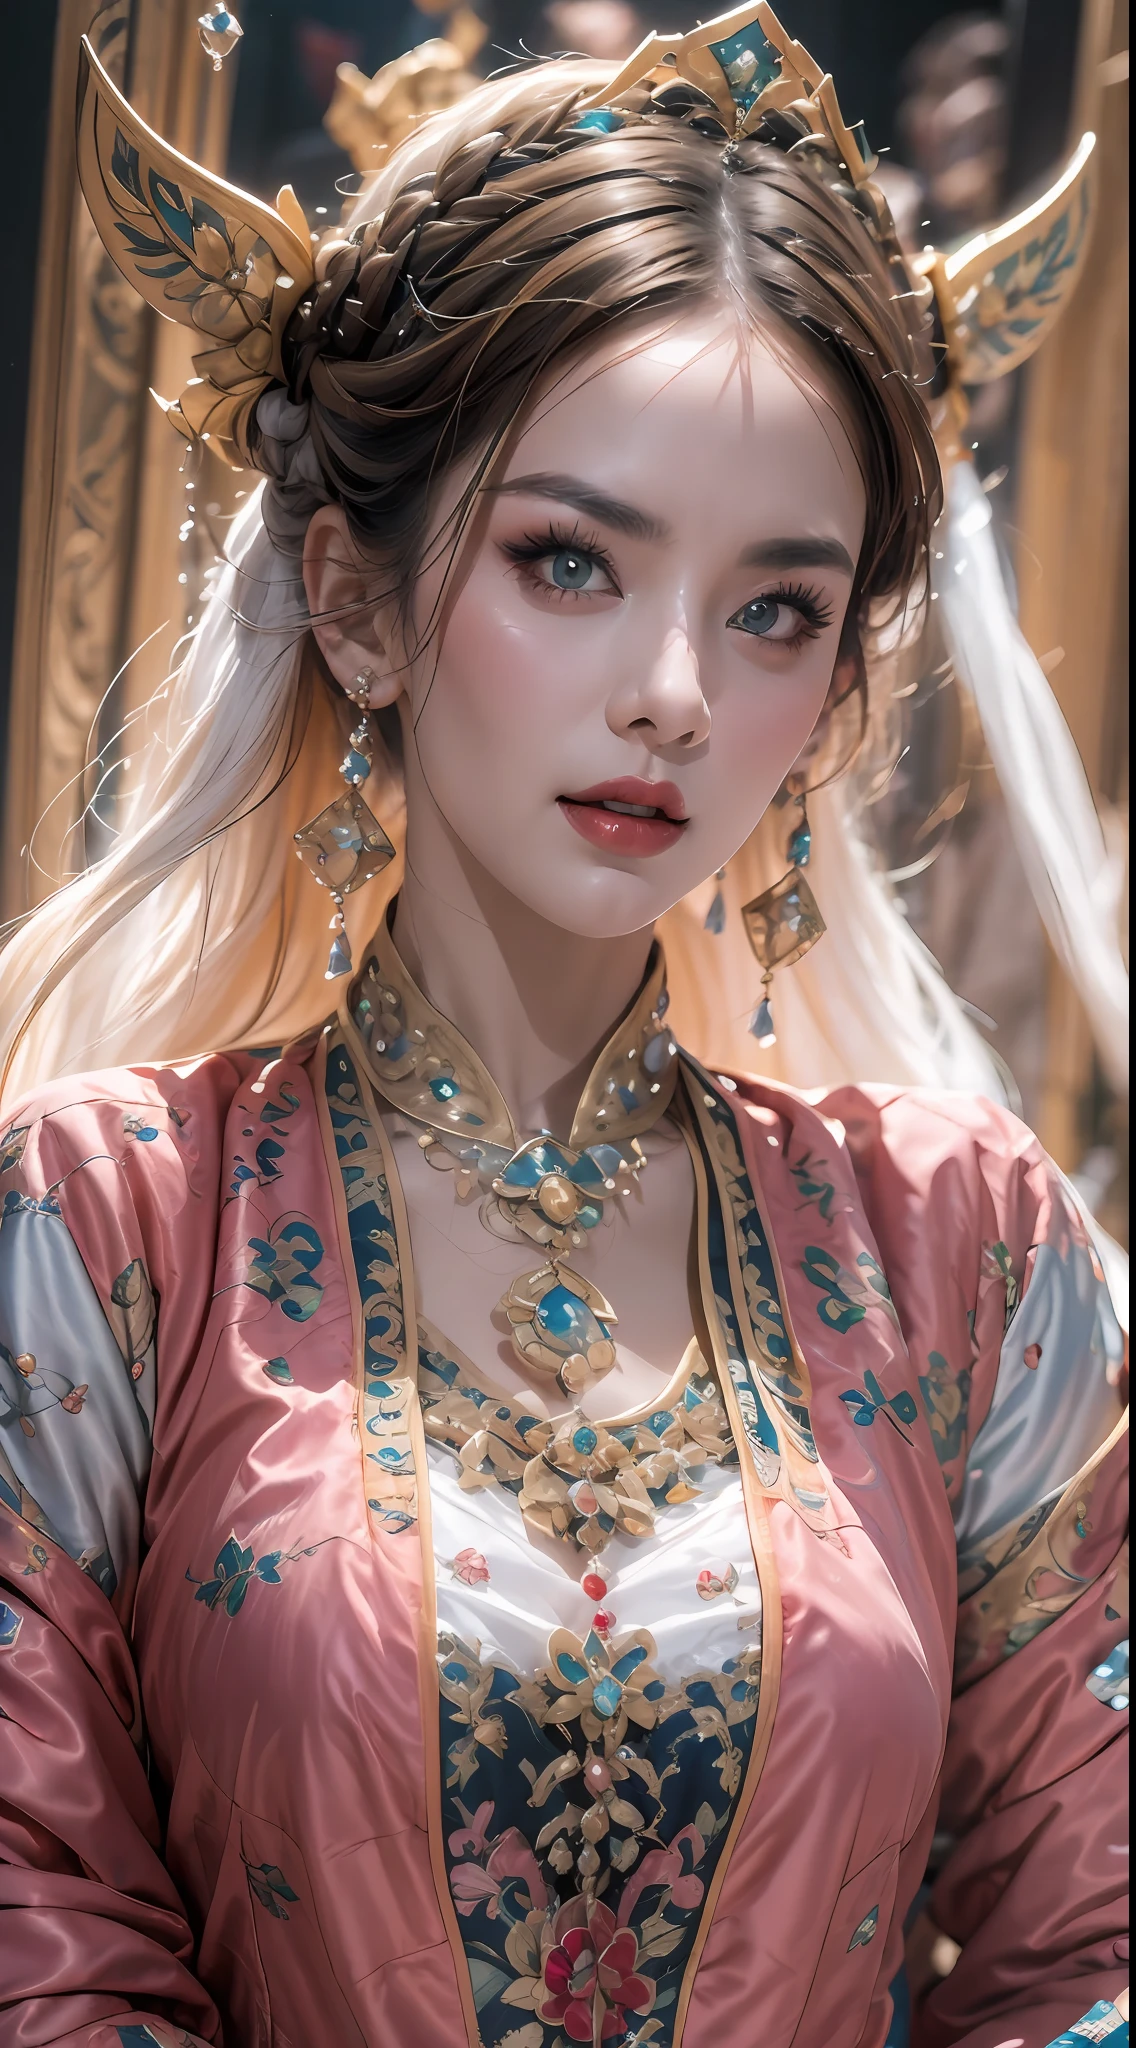 아름다운 20세의 거룩한 여성의 초상화, 얇은 다색 실크 드레스를 입고, beautiful 얼굴 without blemishes, ((자연스러운 미소:0.3)), 입 다물고, ((7색 머리길이:1.2)), 큰 왕관, 머리 브로치, 한푸 드레스, 중국 고대 스타일, 전신 쥬얼리, 이마 문신, 매우 균일한 가슴, 얼굴, 붉은 입술, 섬세한 분홍색과 흰색 눈 (하얗고 디테일하다) 영화 같은, 빛과 어둠, 극적인 조명, 마법의 빛, 매우 상세한 조명, 트루 컬러, 매우 날카로운, 현실적인, 8K 품질, 판타지 우주 배경, 성자와 마법의 공간, 가장 상세한 이미지, 전시사진, 수상, 눈길을 끄는 밝은 톤 효과,